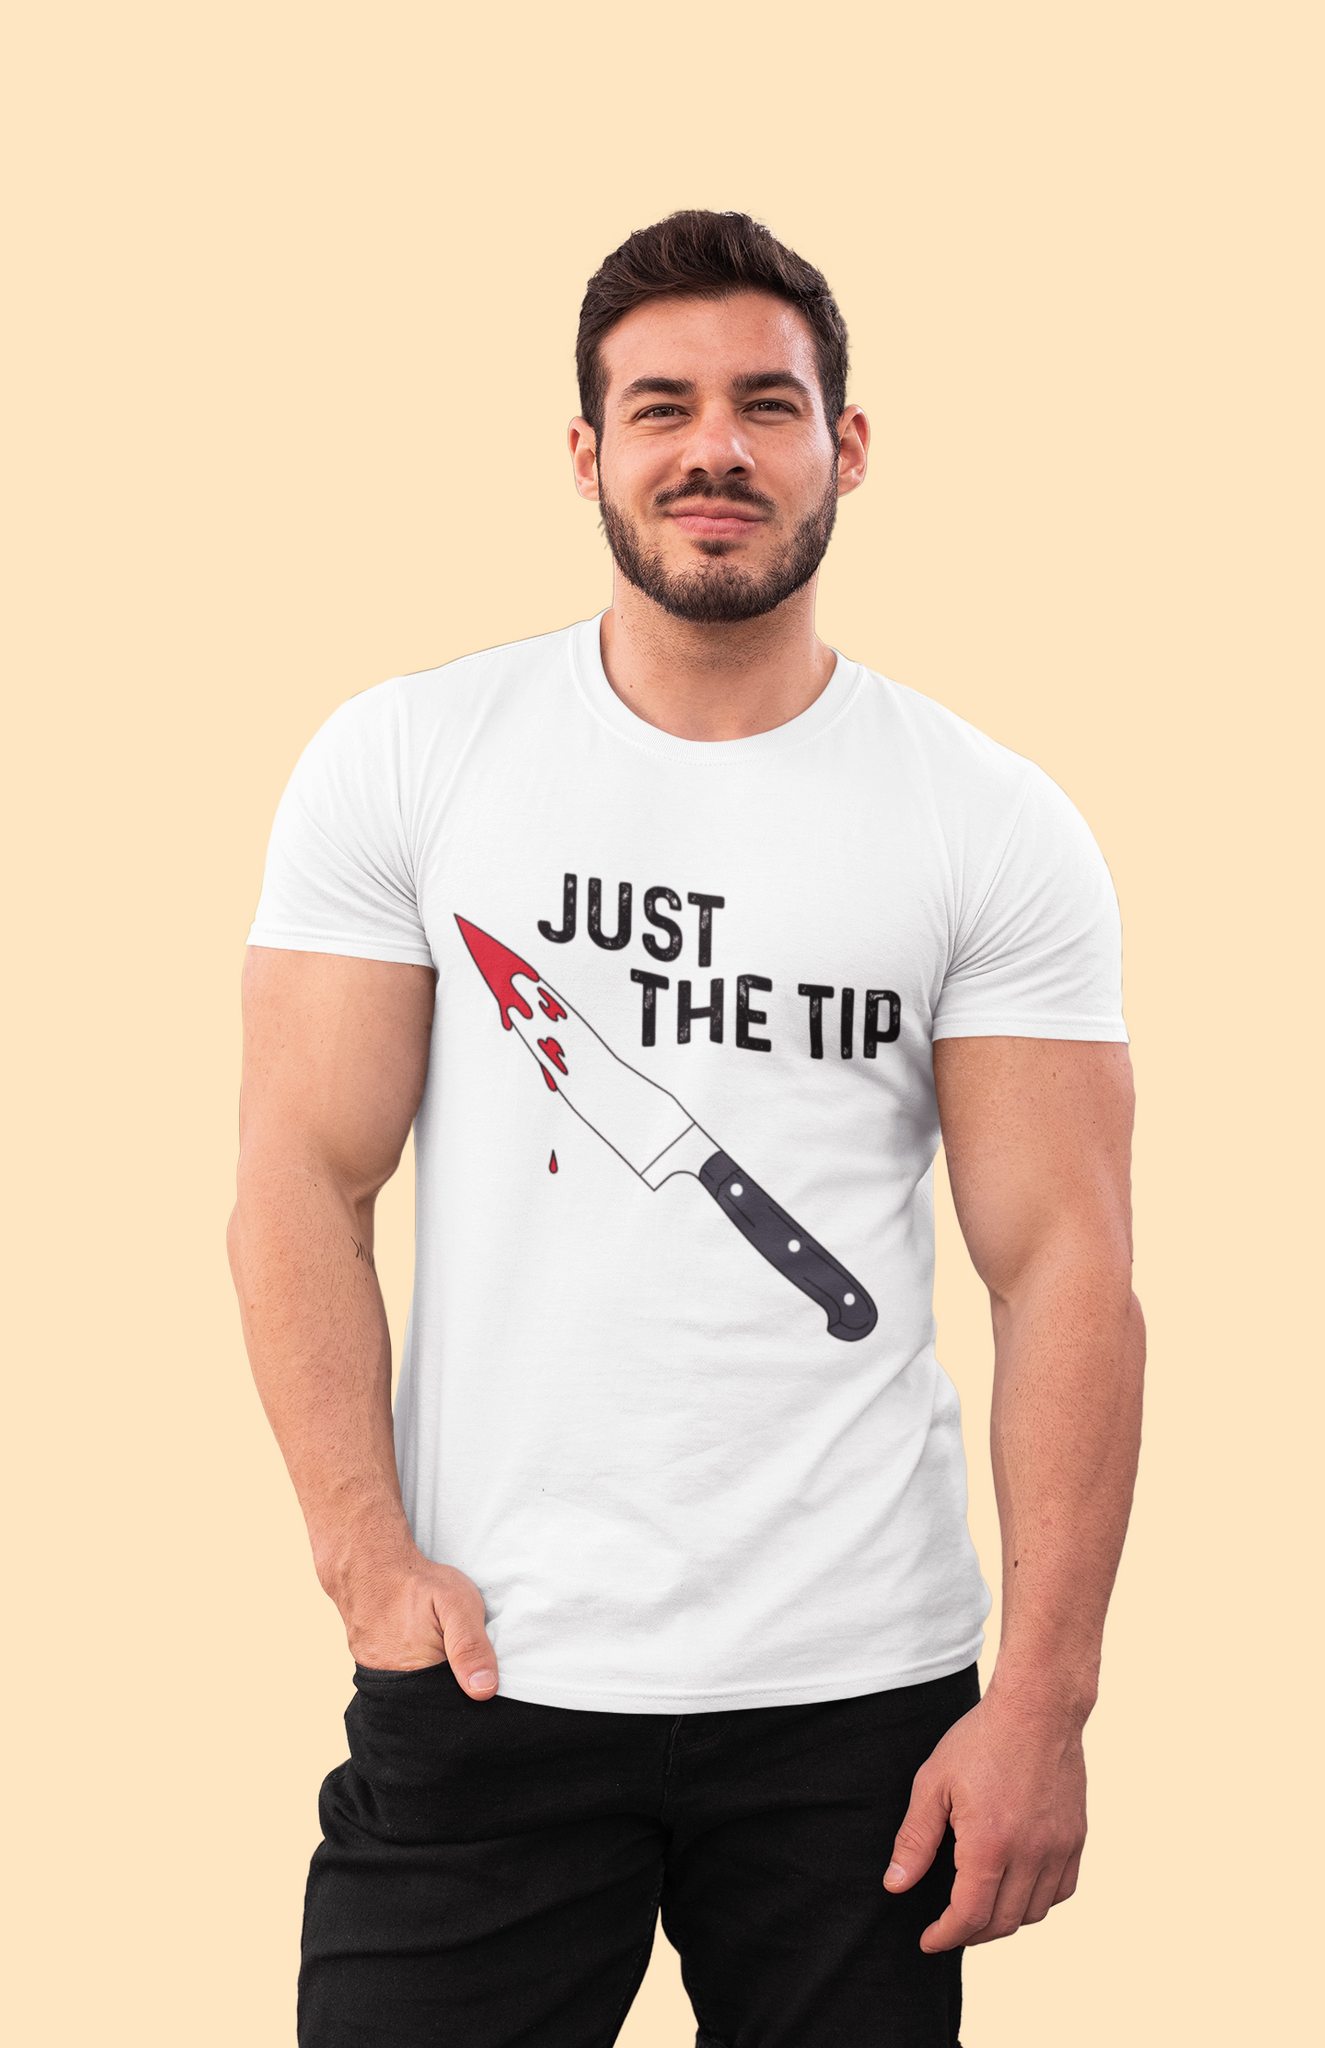 Chucky T Shirt, Horror Character Shirt, Just The Tip T Shirt, Halloween Gifts